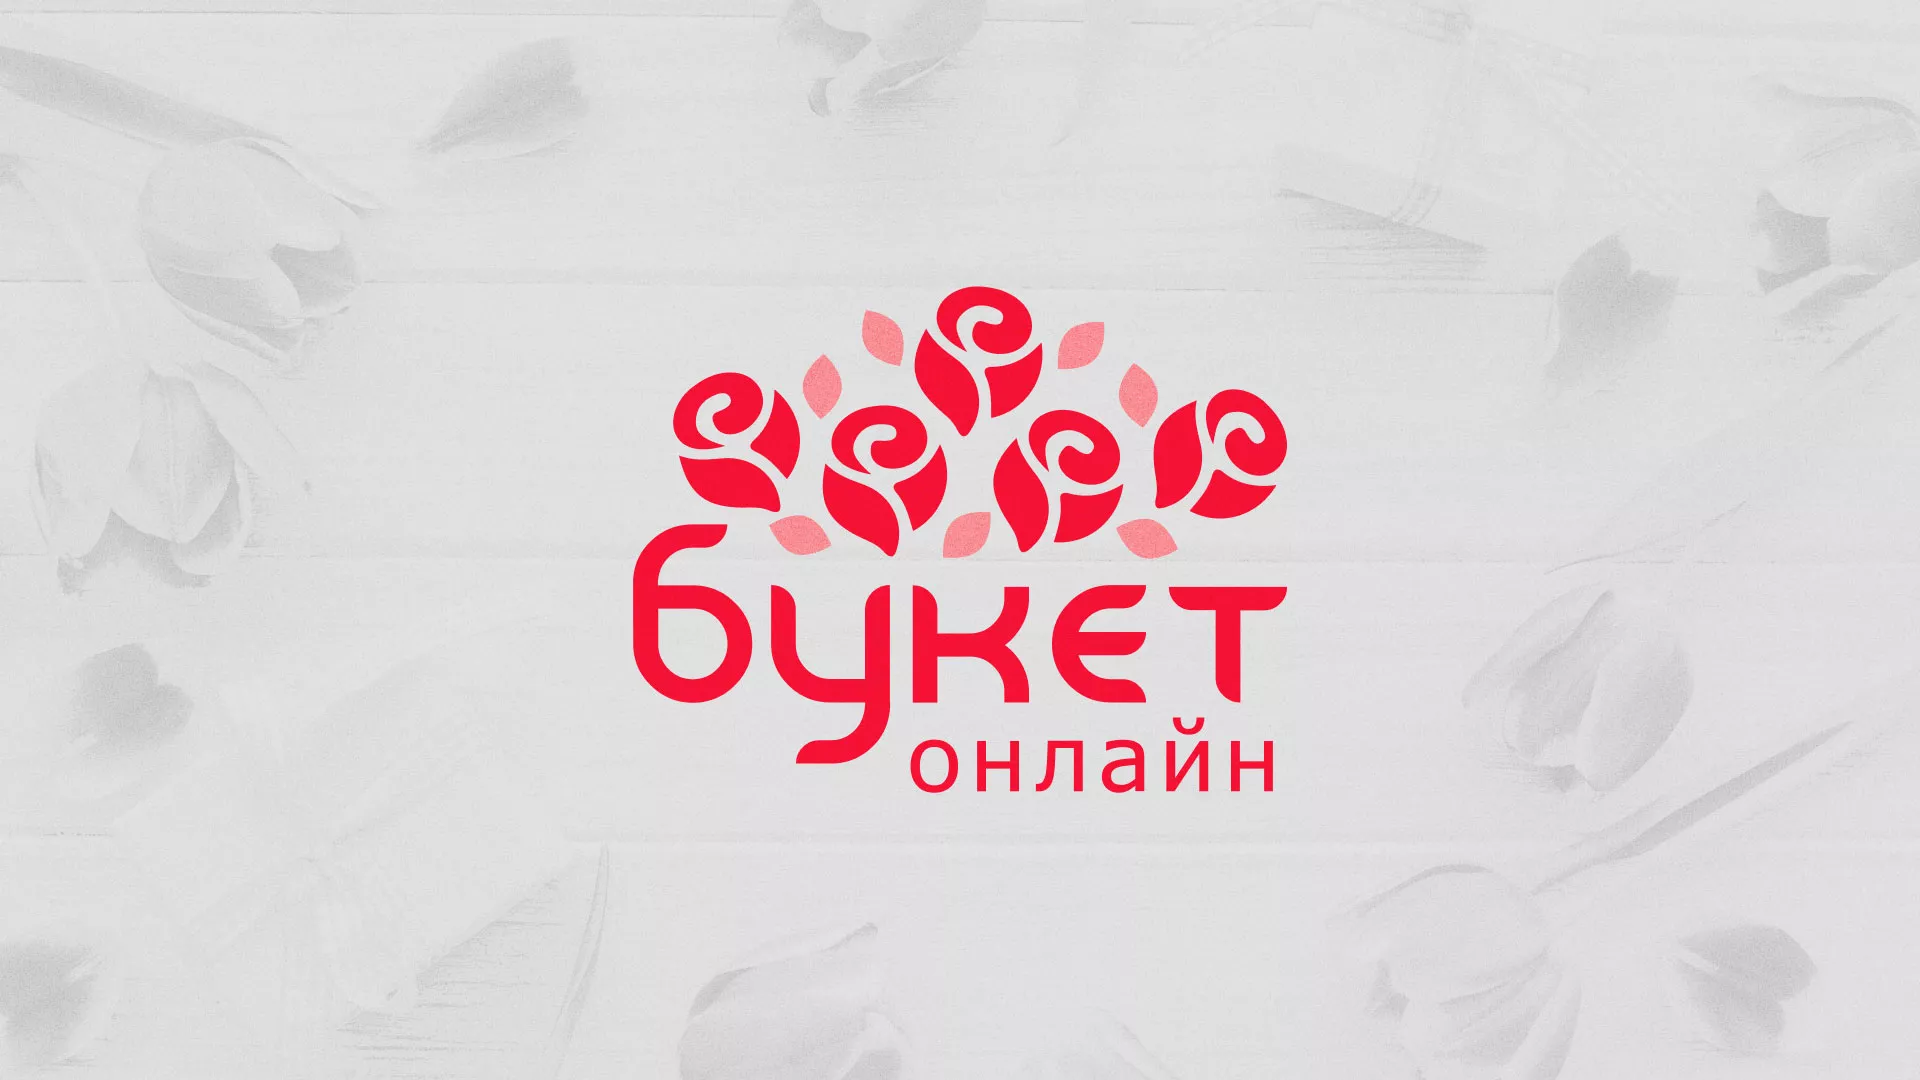 Создание интернет-магазина «Букет-онлайн» по цветам в Высоковске